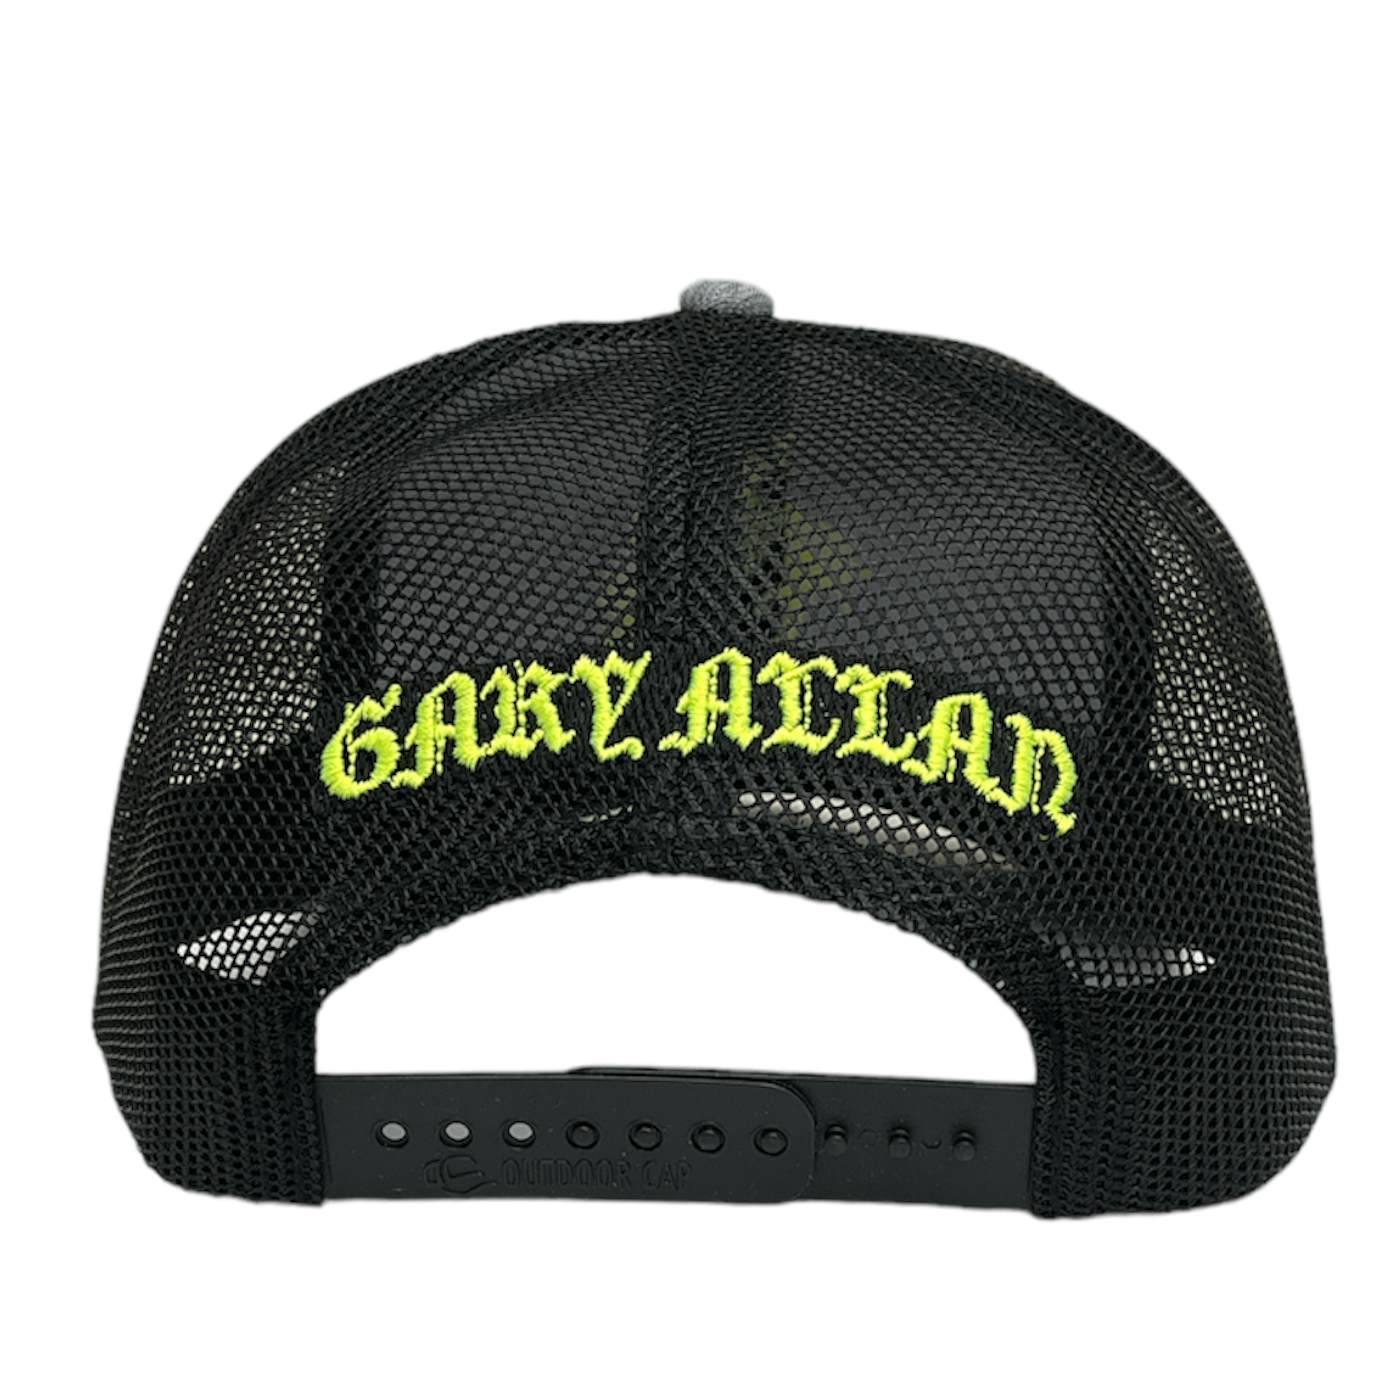 Gary Allan Heather Grey and Black Neon Ballcap